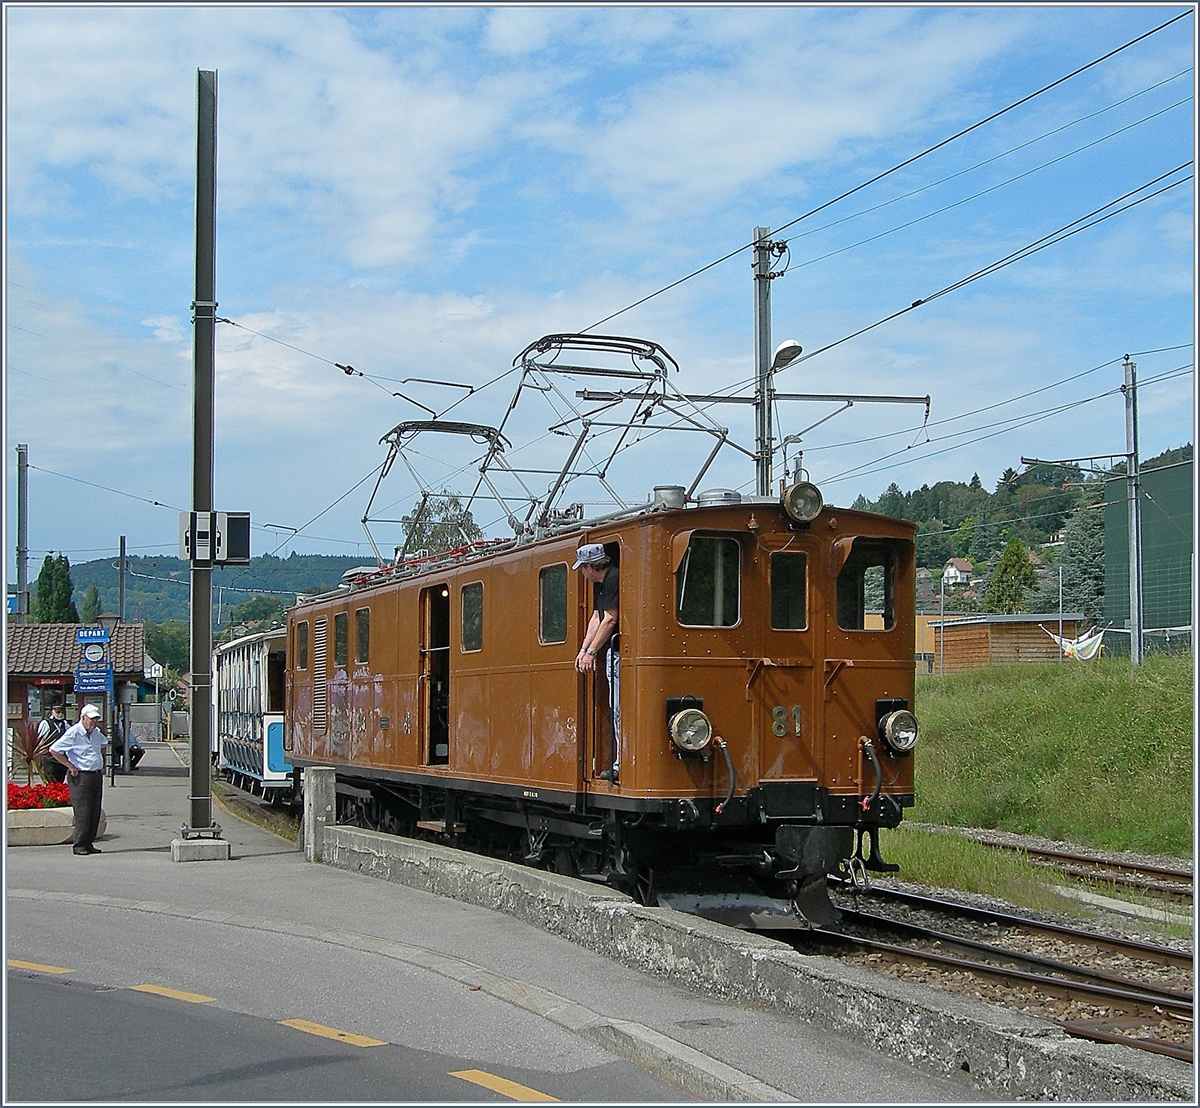 Die Bernina Bahn Ge 4/4 81 der Blonay-Chamby Bahn wartet in Blonay auf die Abfahrt nach Chaulin. 

16. August 2020